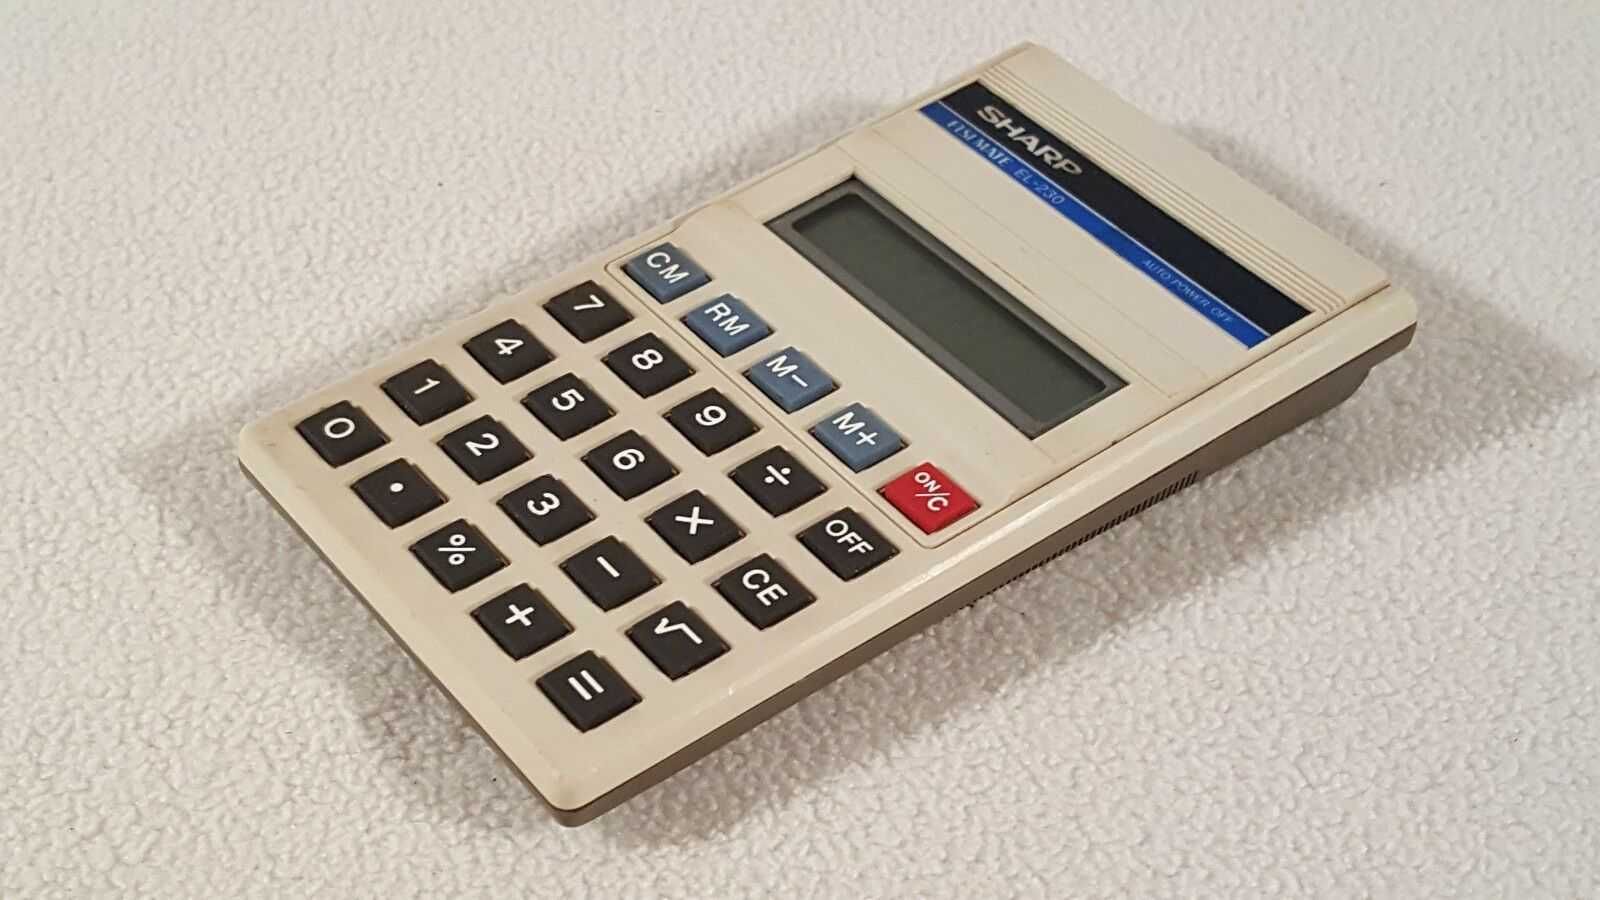 Vintage Sharp electronic calculator Elsi Mate EL-230. Made in Japan